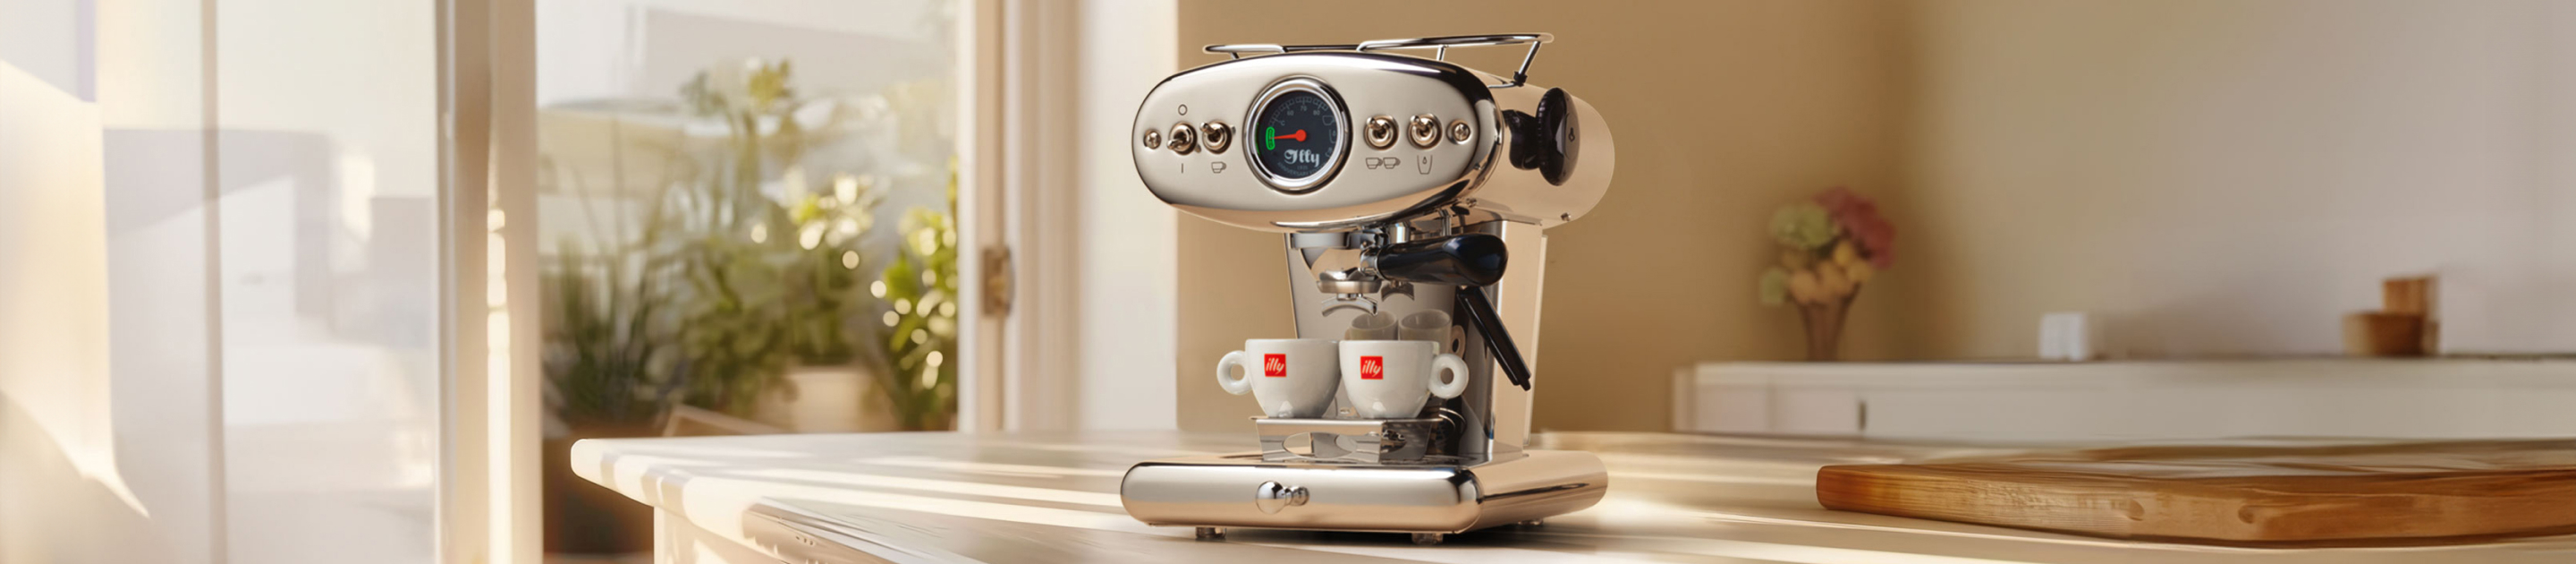 Máquinas de café en monodis E.S.E. y café molido